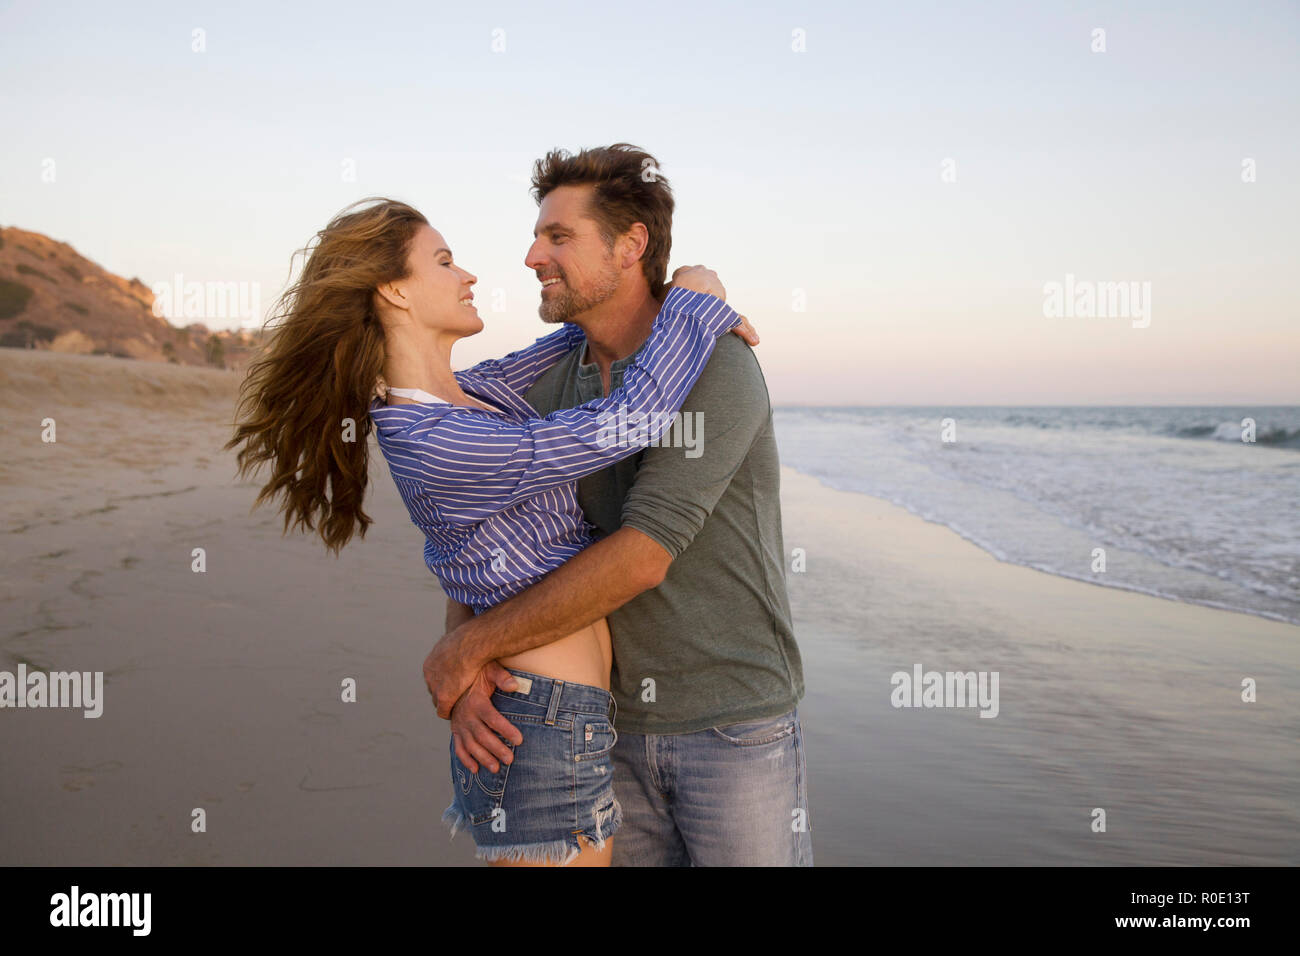 Halber Baulänge sein Porträt der romantischen Mid-Adult Paar in jeder andere Arme am Strand Stockfoto